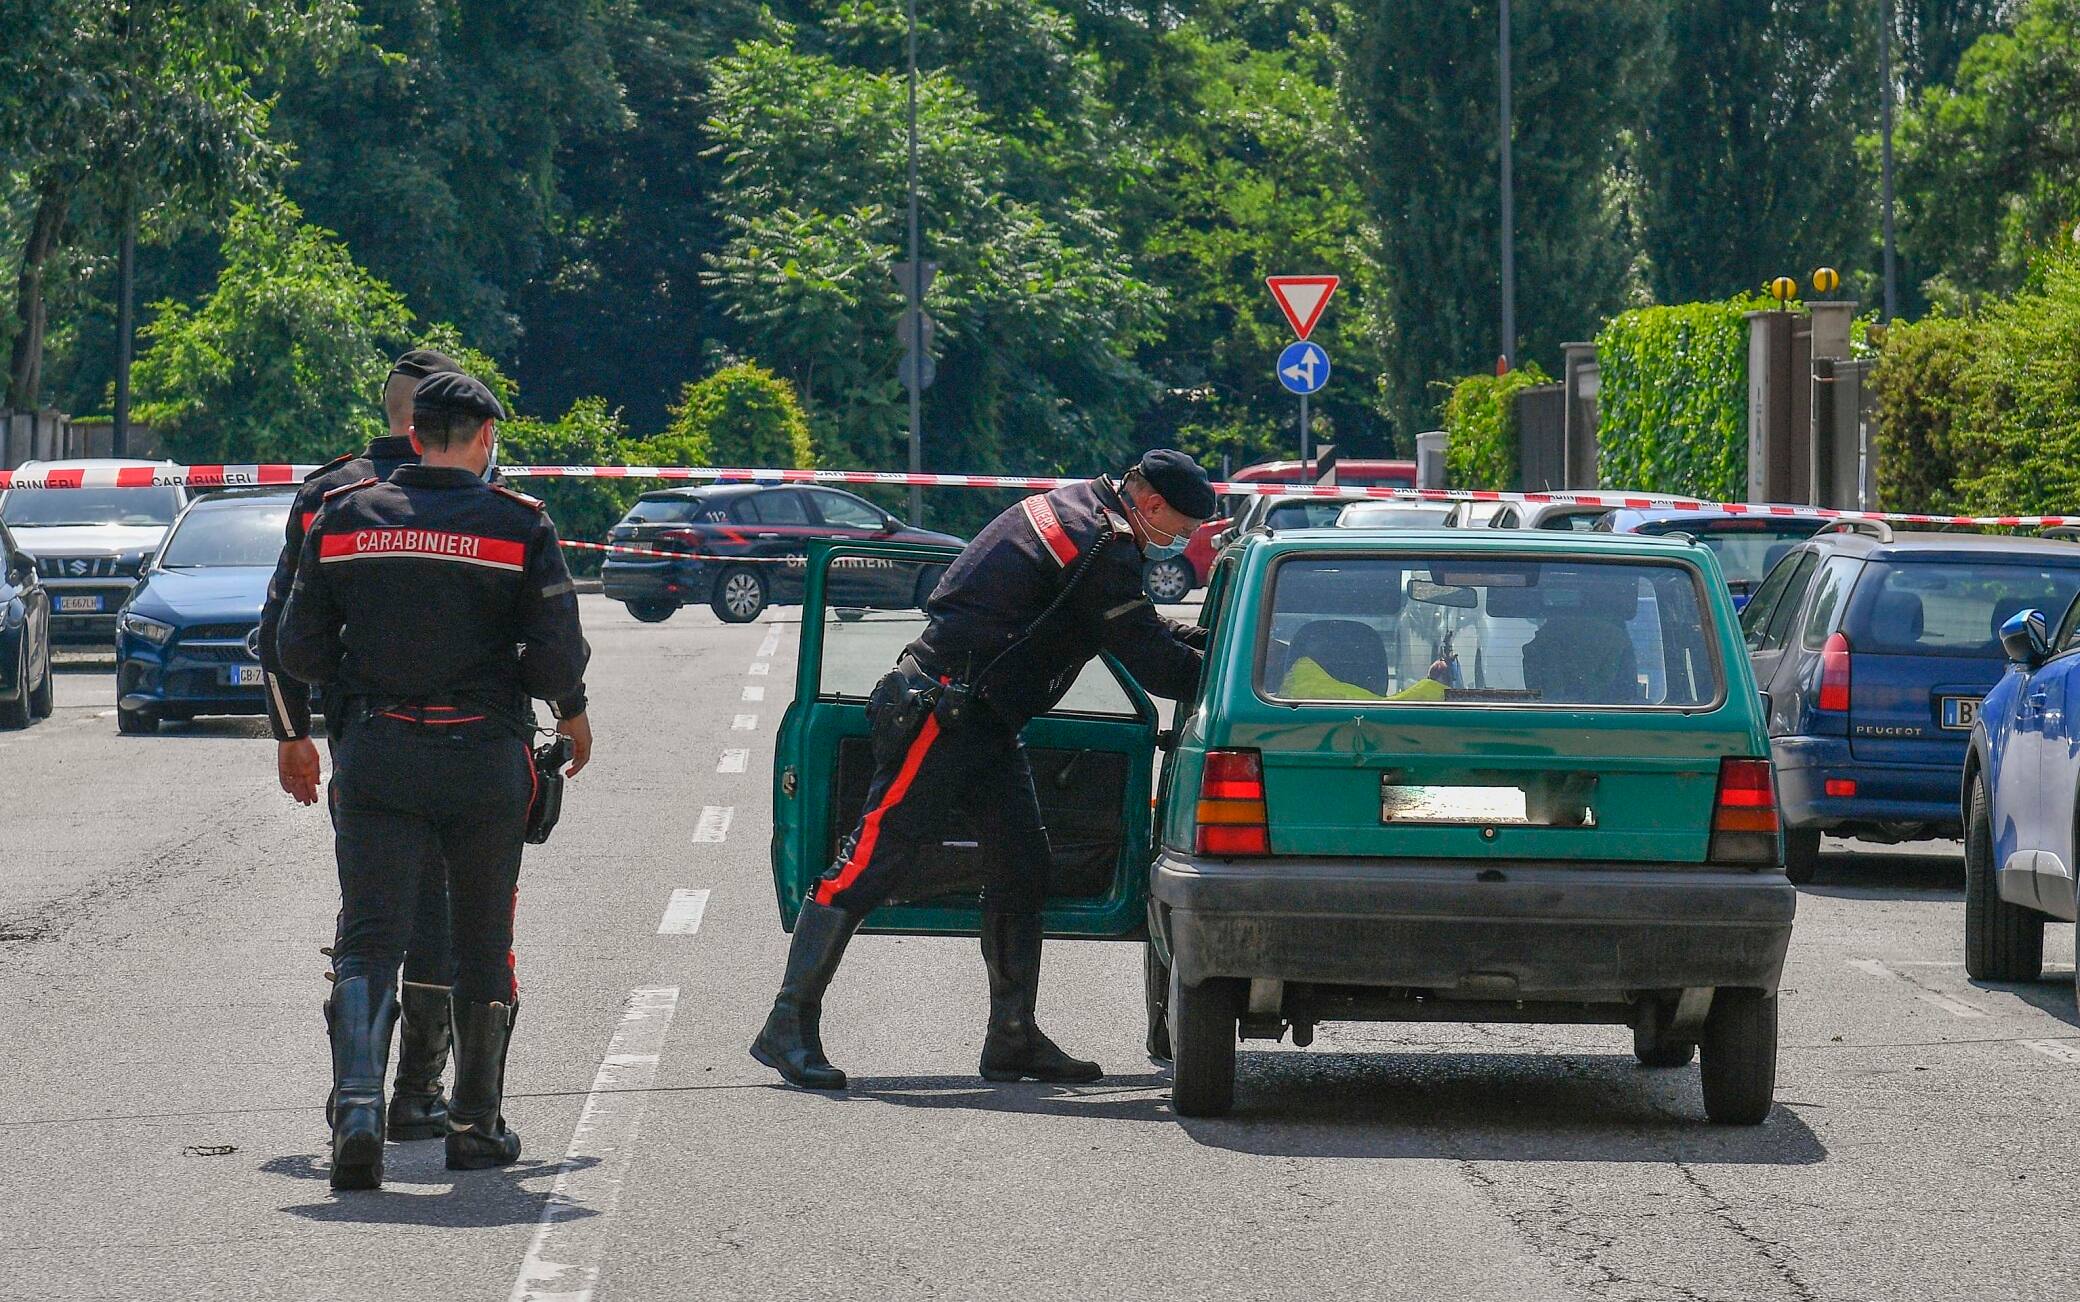 Carabinieri intervenuti in via Amantea, all'angolo con via quinto Romano, per soccorrere un uomo di 54 anni, agonizzante a bordo di un'auto con ferite da taglio. L'uomo è stato trasportato all'Ospedale San Carlo, dove è morto. L'ipotesi prevalente è l'omicidio, Milano, 12 Giugno 2021.  
ANSA/ANDREA FASANI